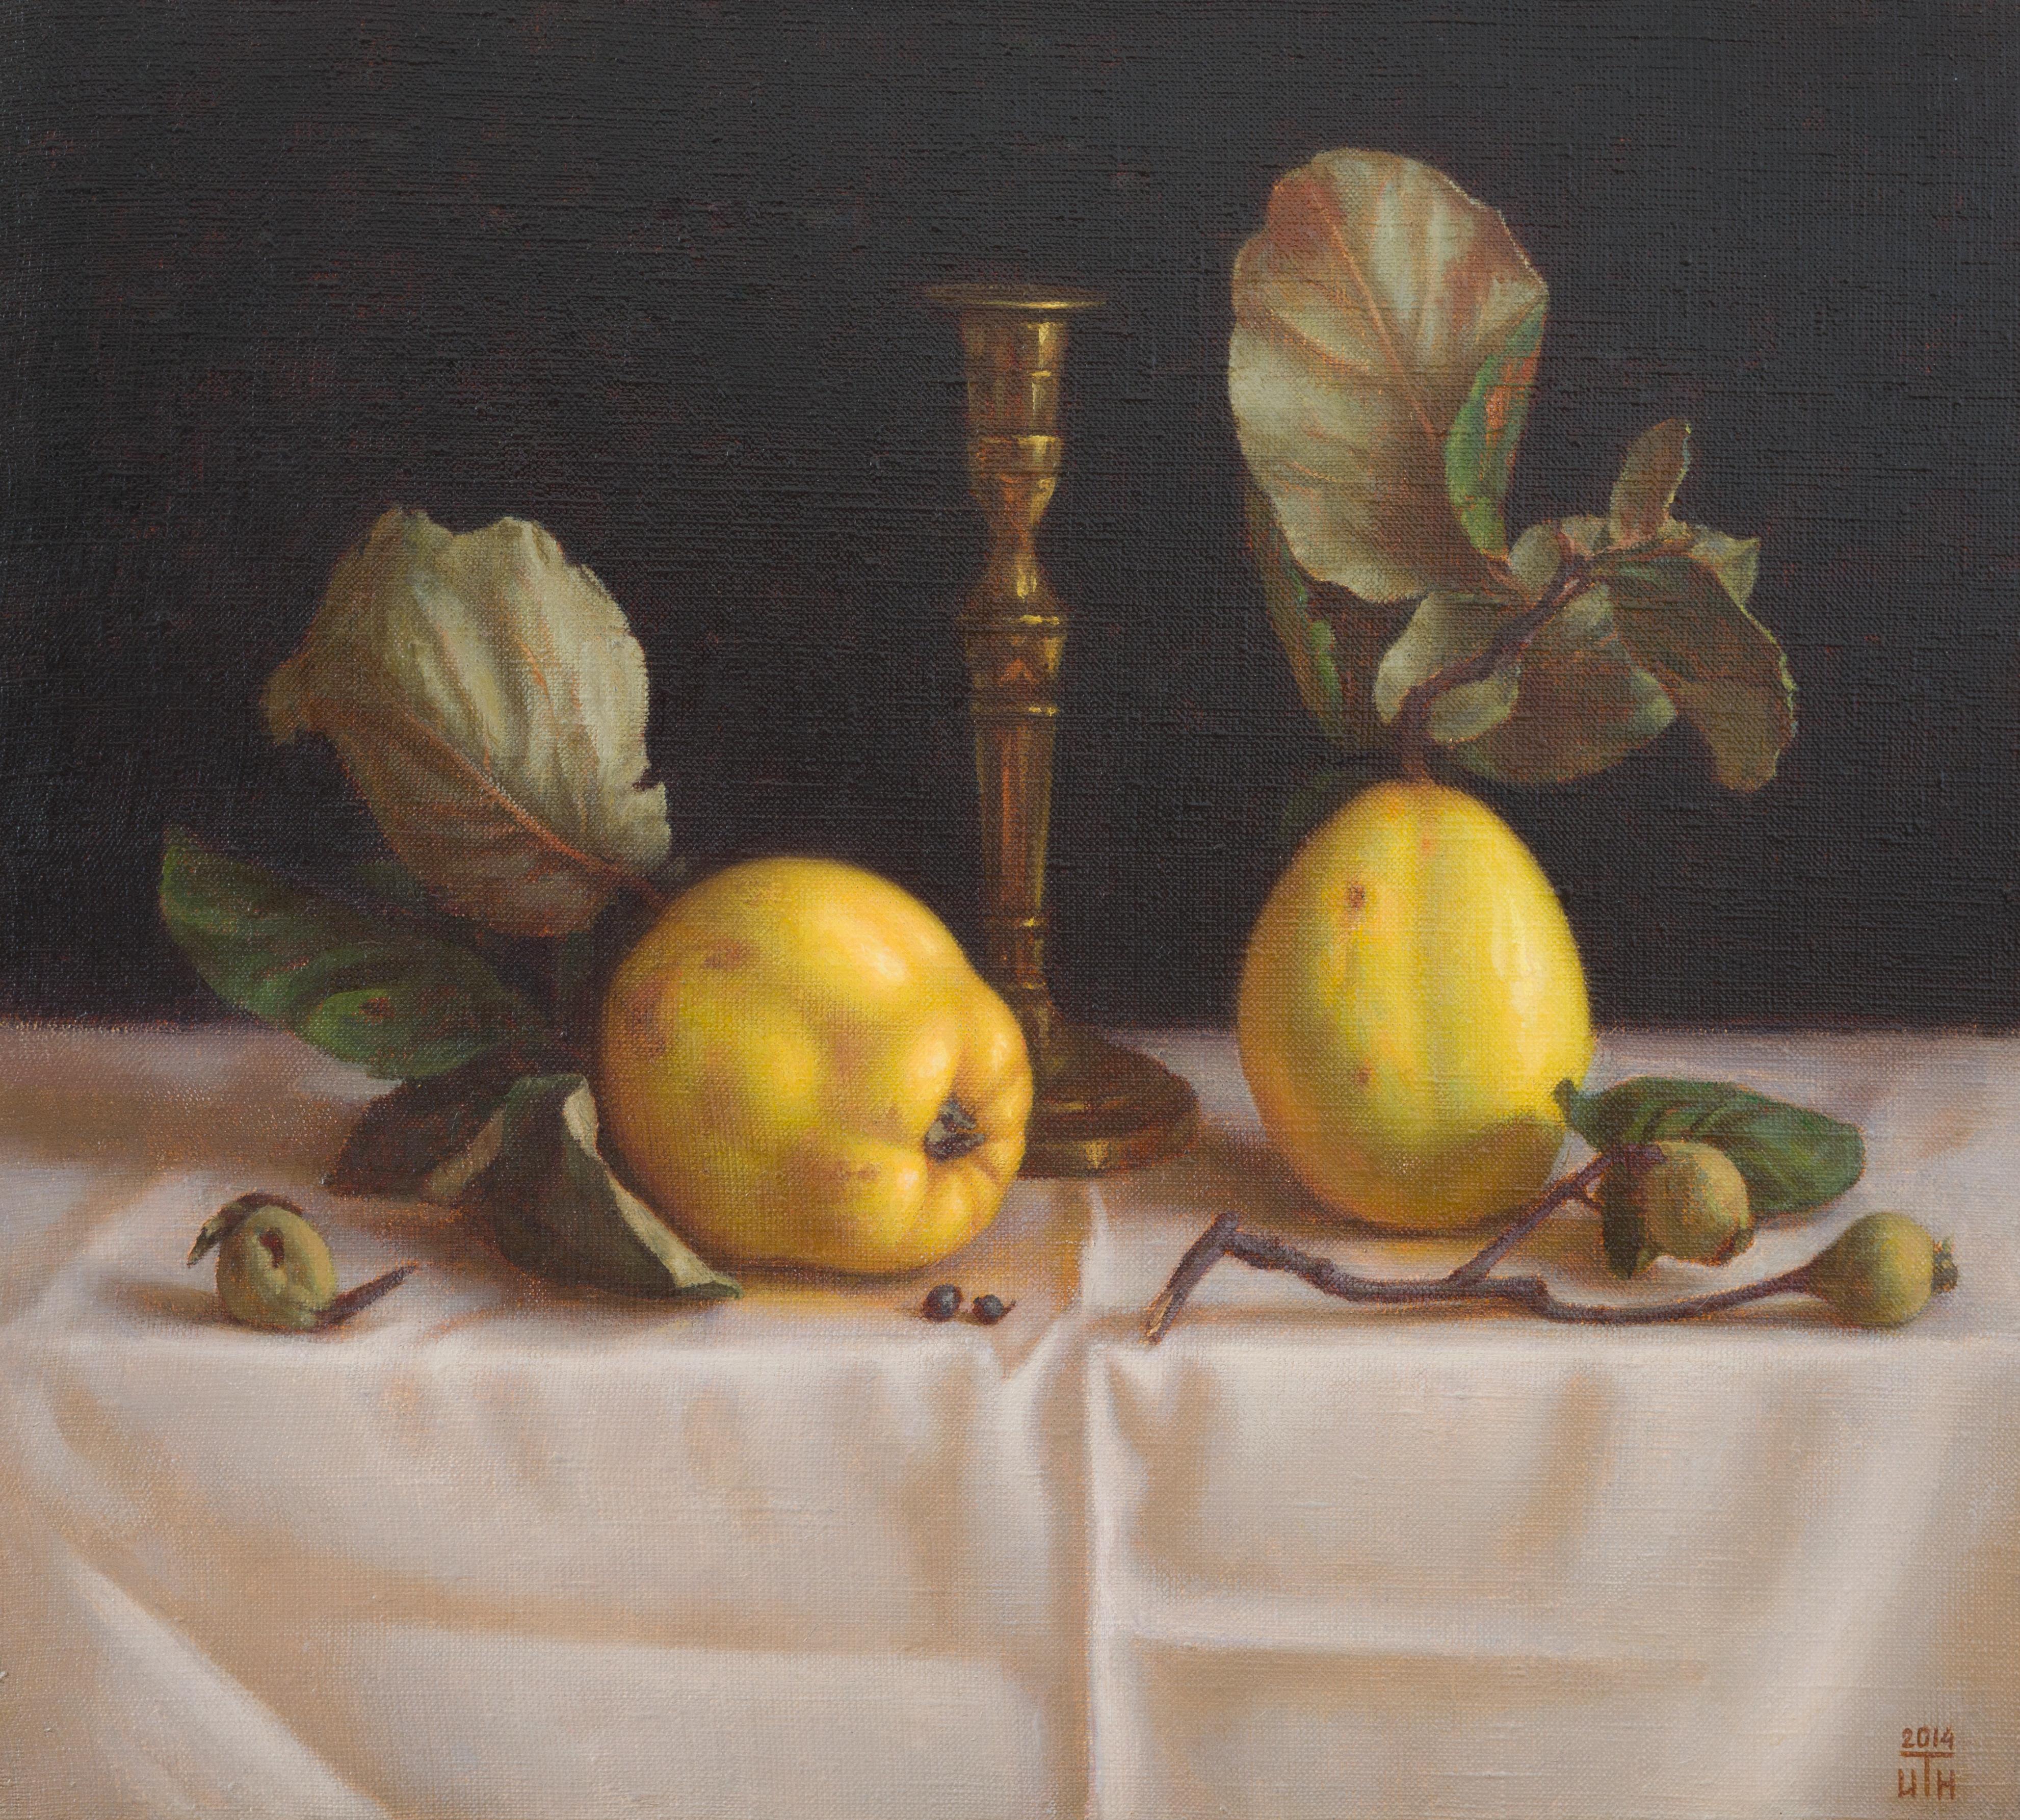 Die schöne goldene Farbe der Früchte und ihre Textur inspirierten mich zu diesem Werk. Der Malstil ist von den holländischen Meistern des 17. Jahrhunderts inspiriert. Das Farbschema ist eine harmonische Kombination aus satten Grün-, Gelb- und